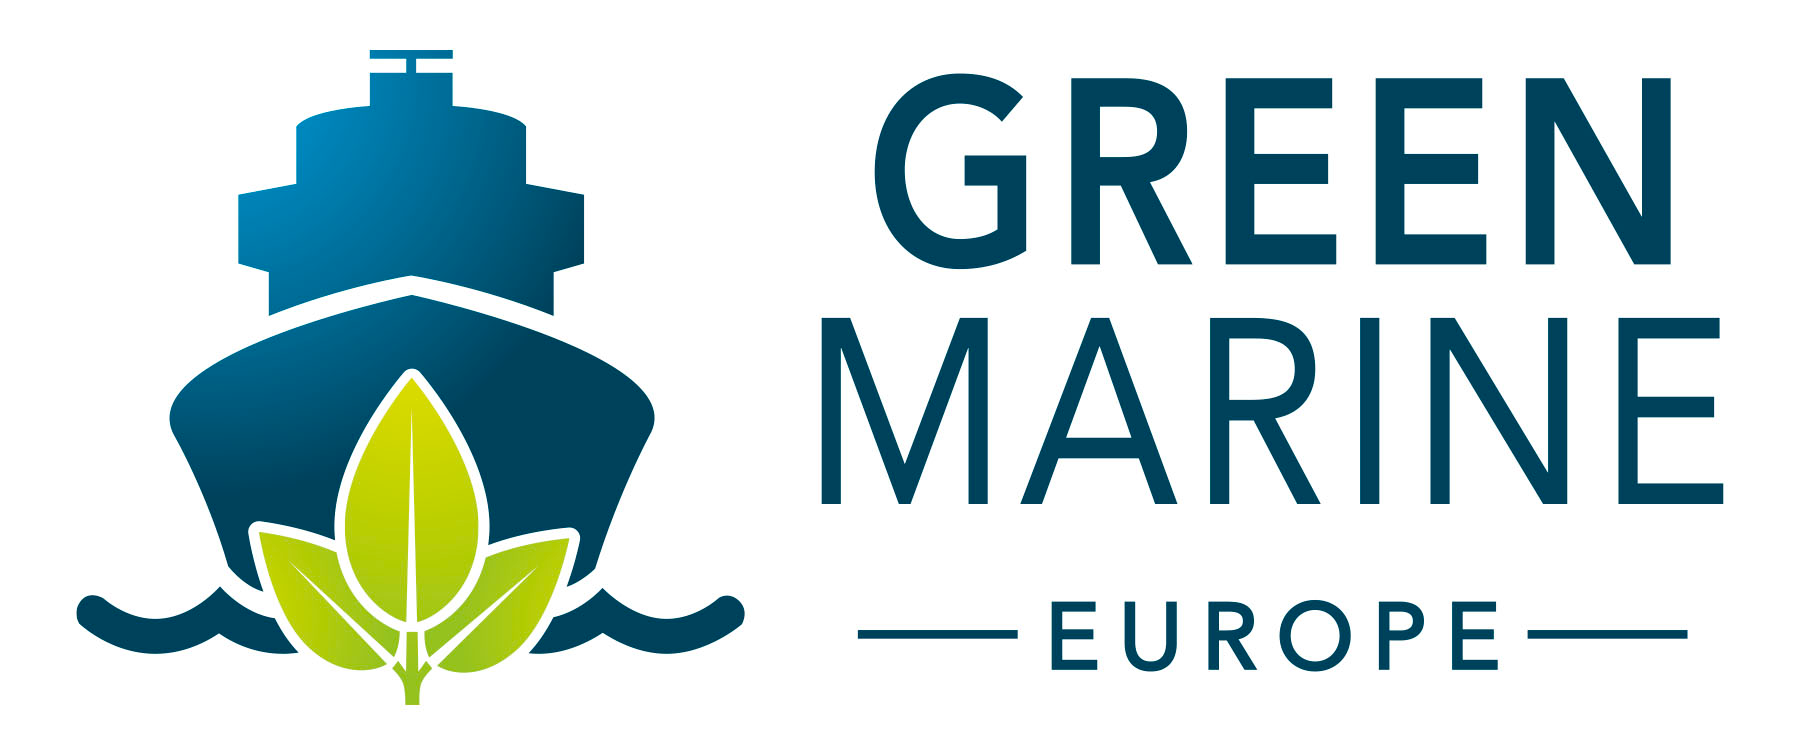 Green Marine Europe : un engagement croissant de l’industrie maritime européenne